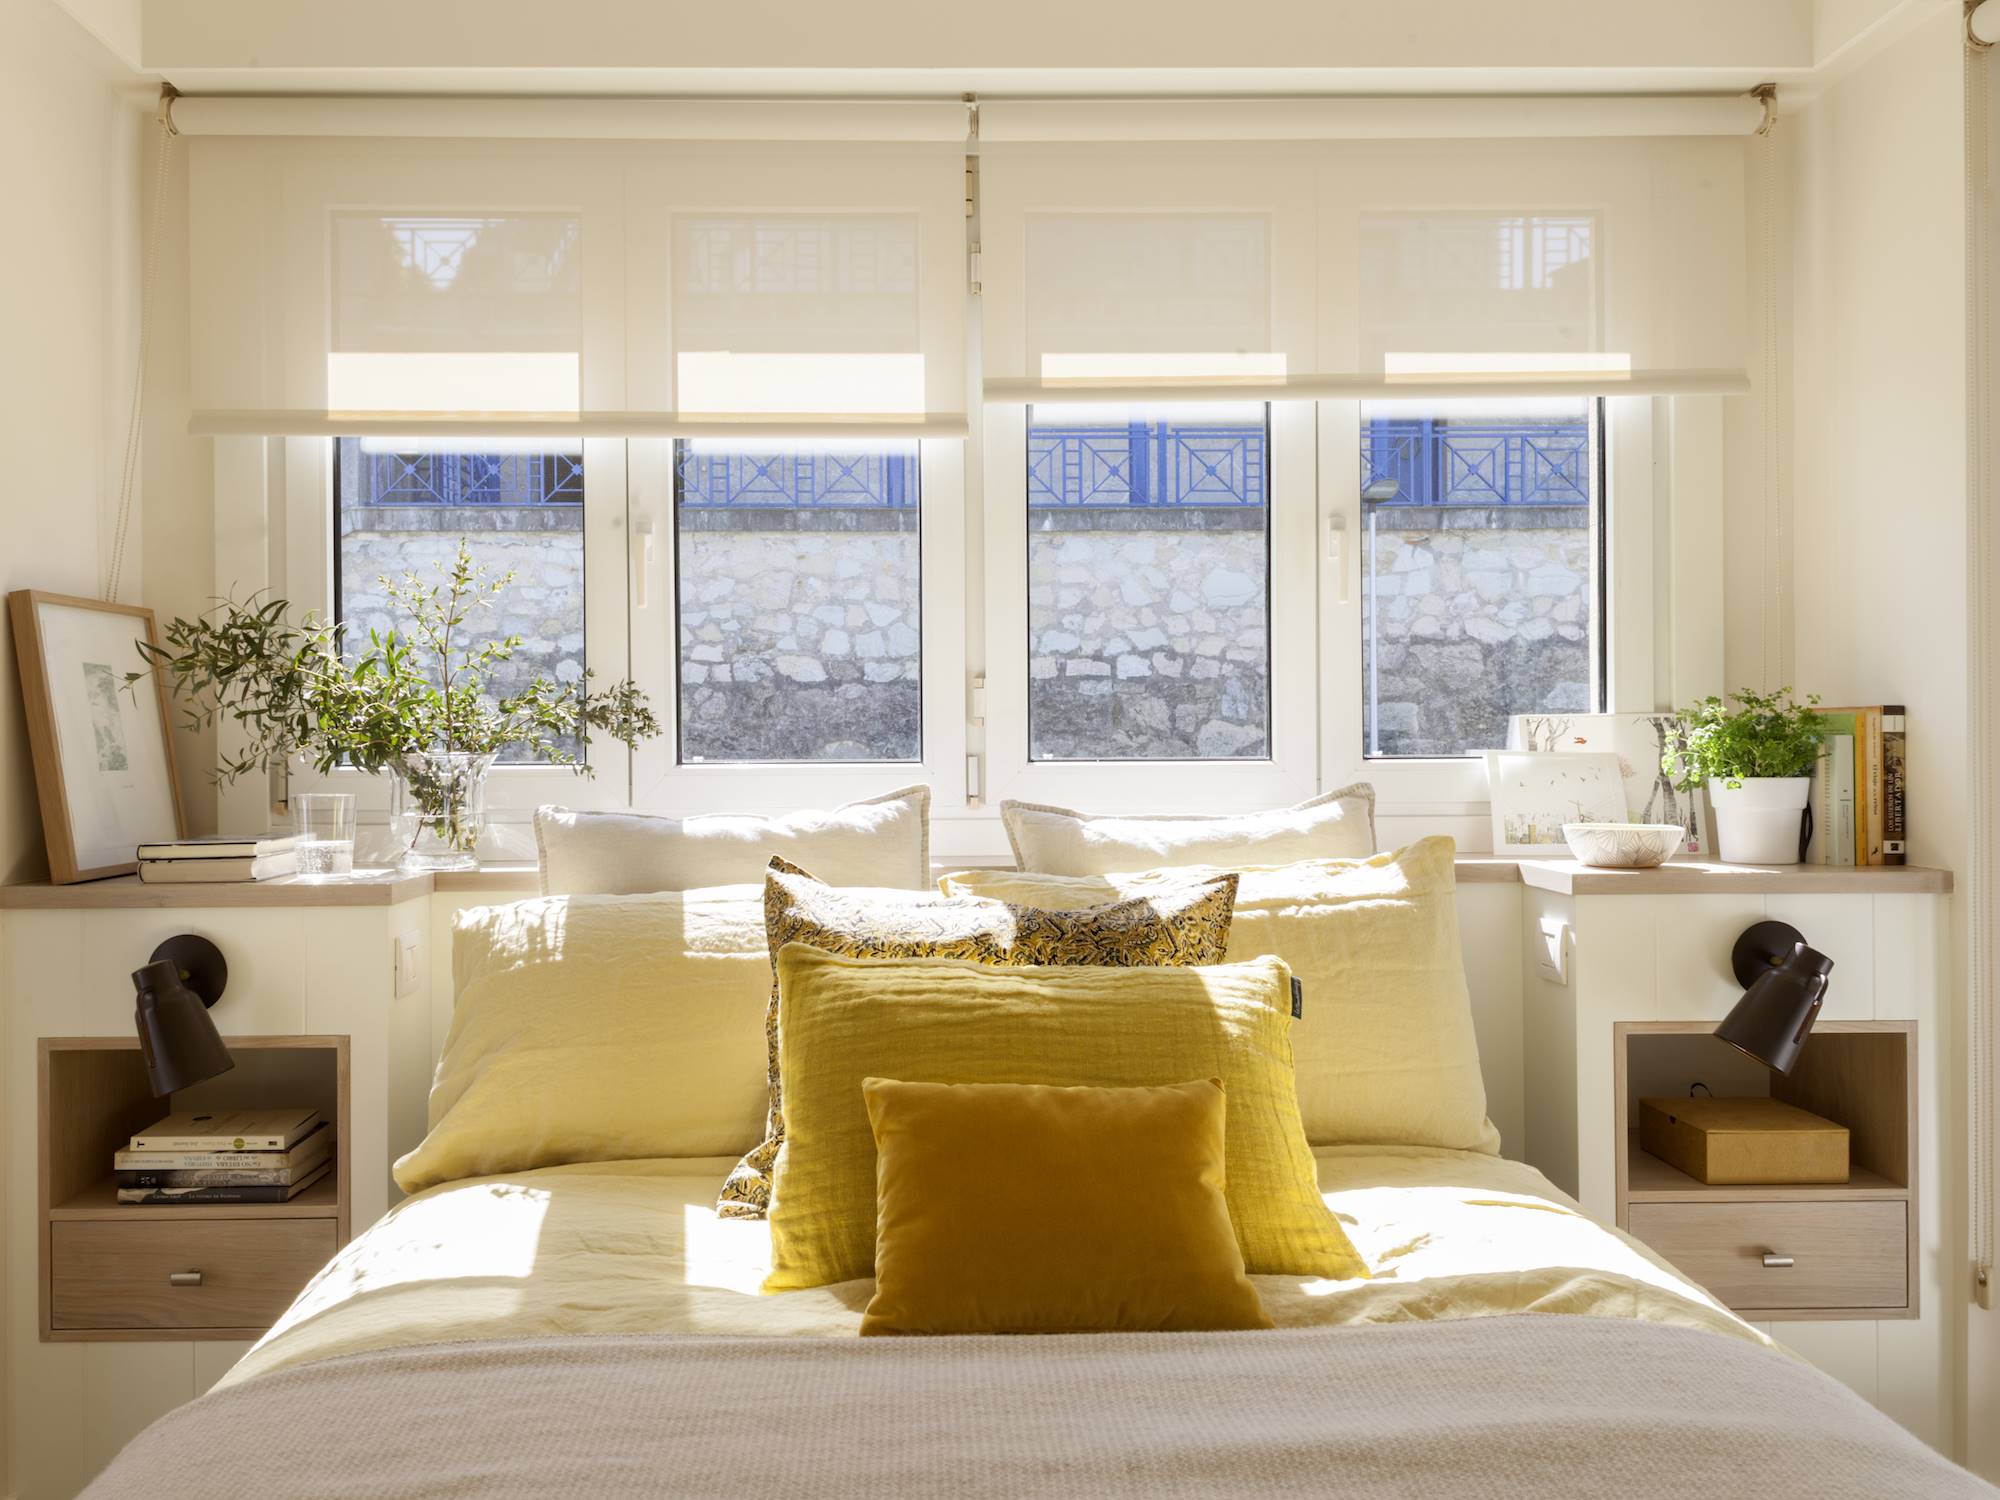 Dormitorio con cama con cojines ocre debajo la ventana.